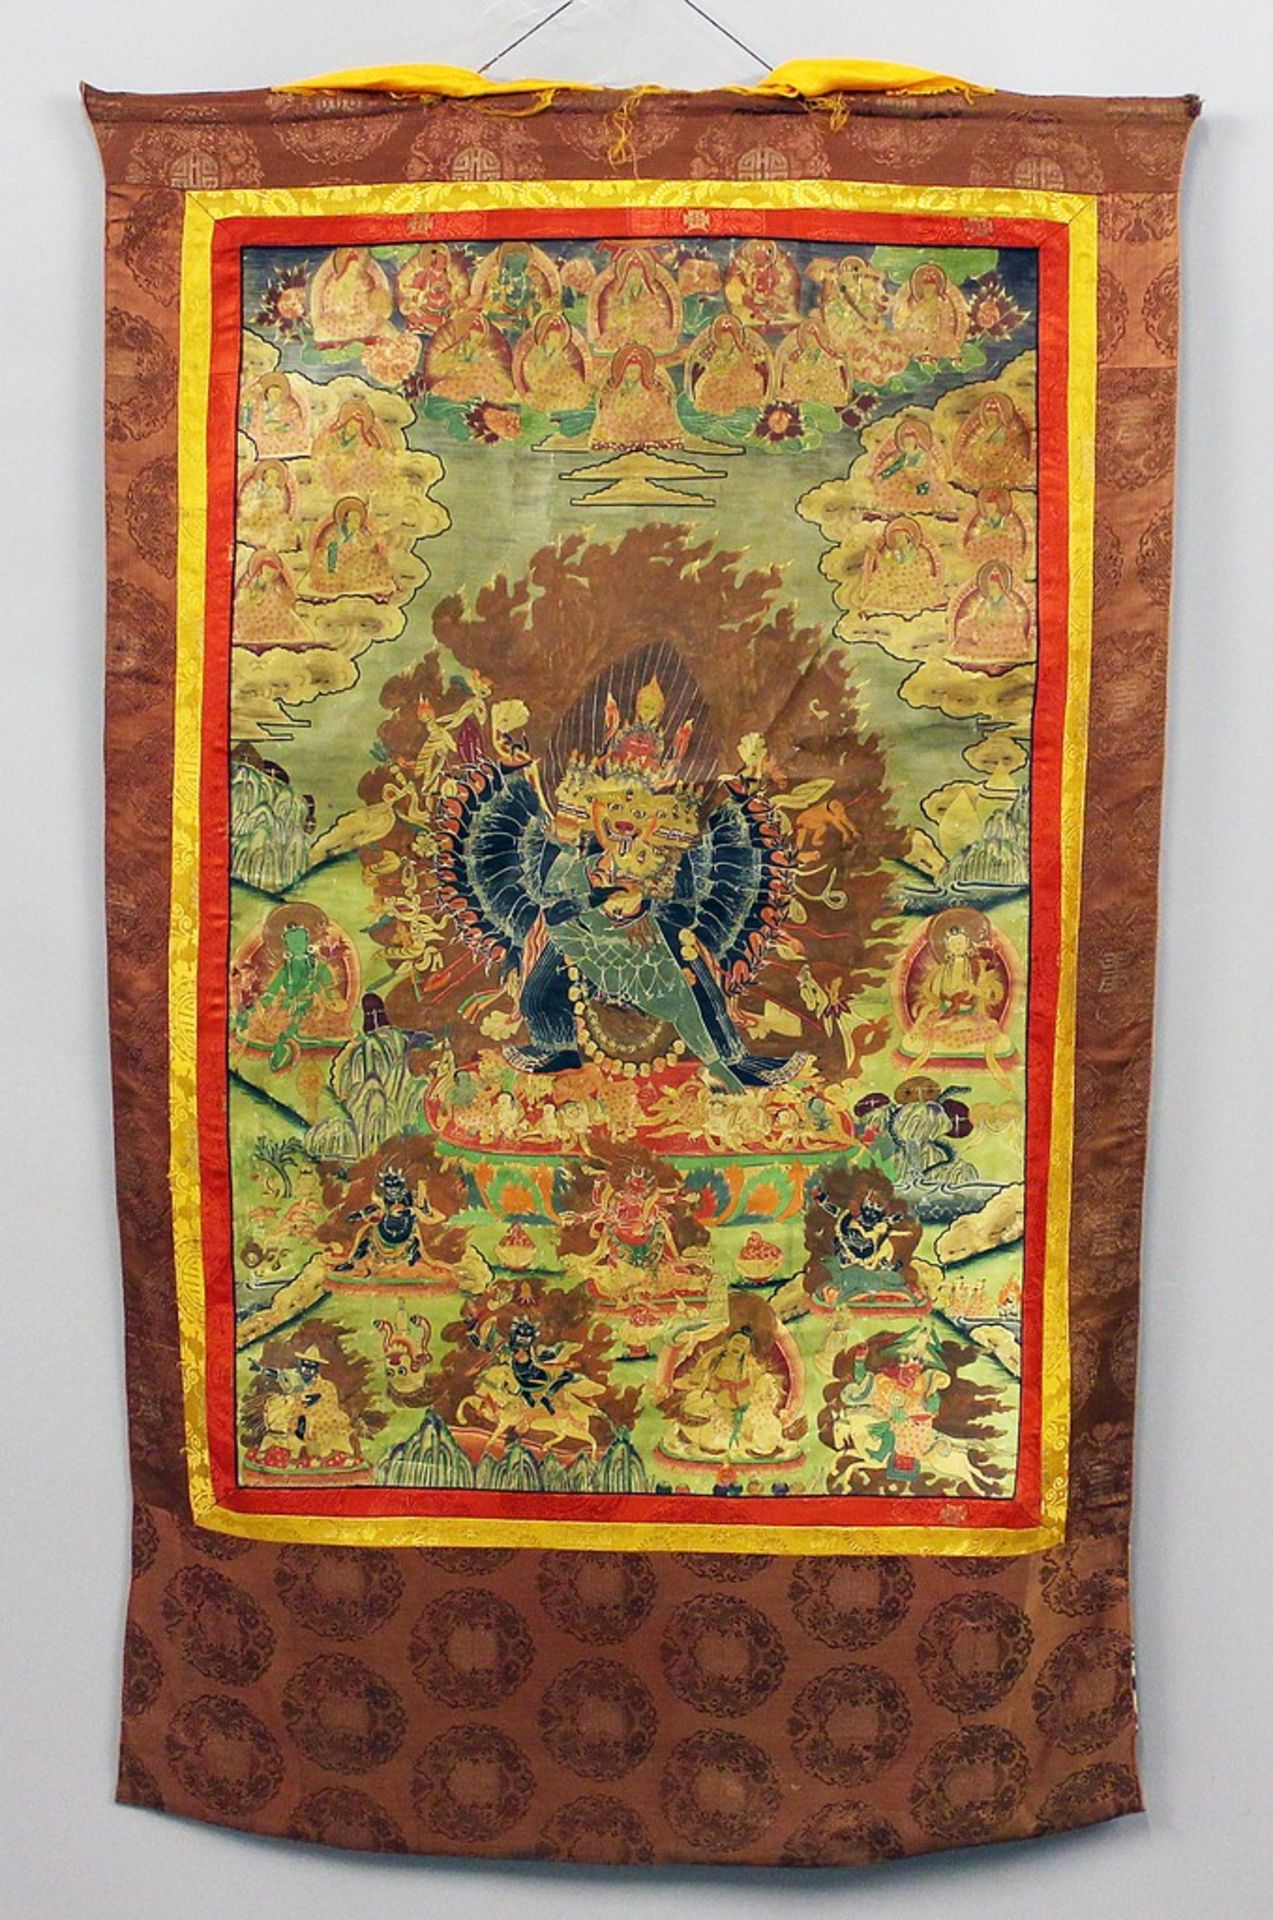 Großer Thangka. Vielfigurige Darstellung um mittig wohl Mahakala mit Schädelkette. 1